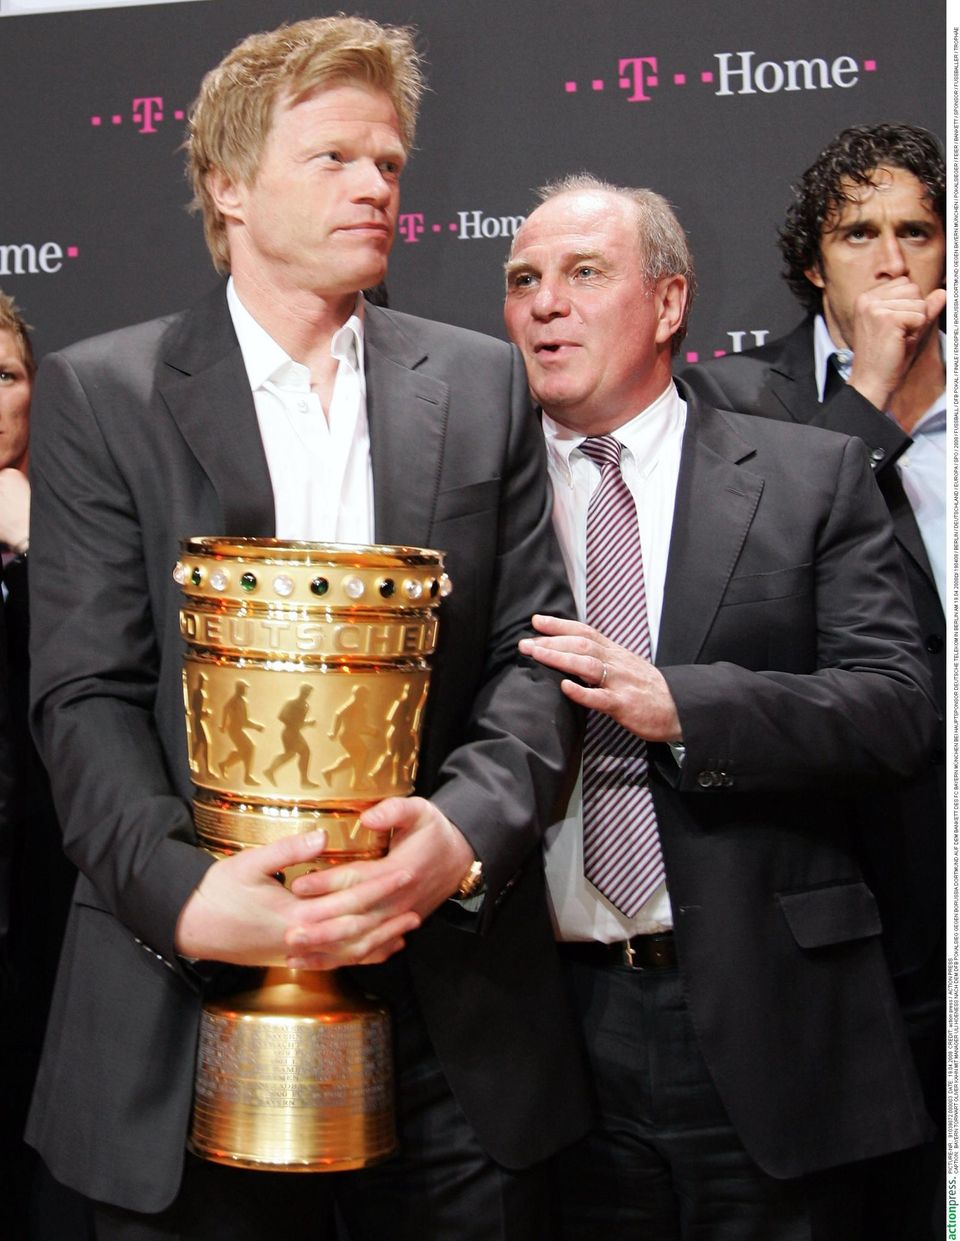 14 Jahre arbeitete Oliver Kahn als Bayern-Torwart mit Uli Hoeneß zusammen."Ich habe ihn nie als einen süchtigen Zocker erlebt", so Kahn zu "Gala" über den Bayern-Präsidenten, der wegen Steuerhinterziehung vor Gericht muss. "Ich wünsche ihm, dass die Sache gut ausgeht."